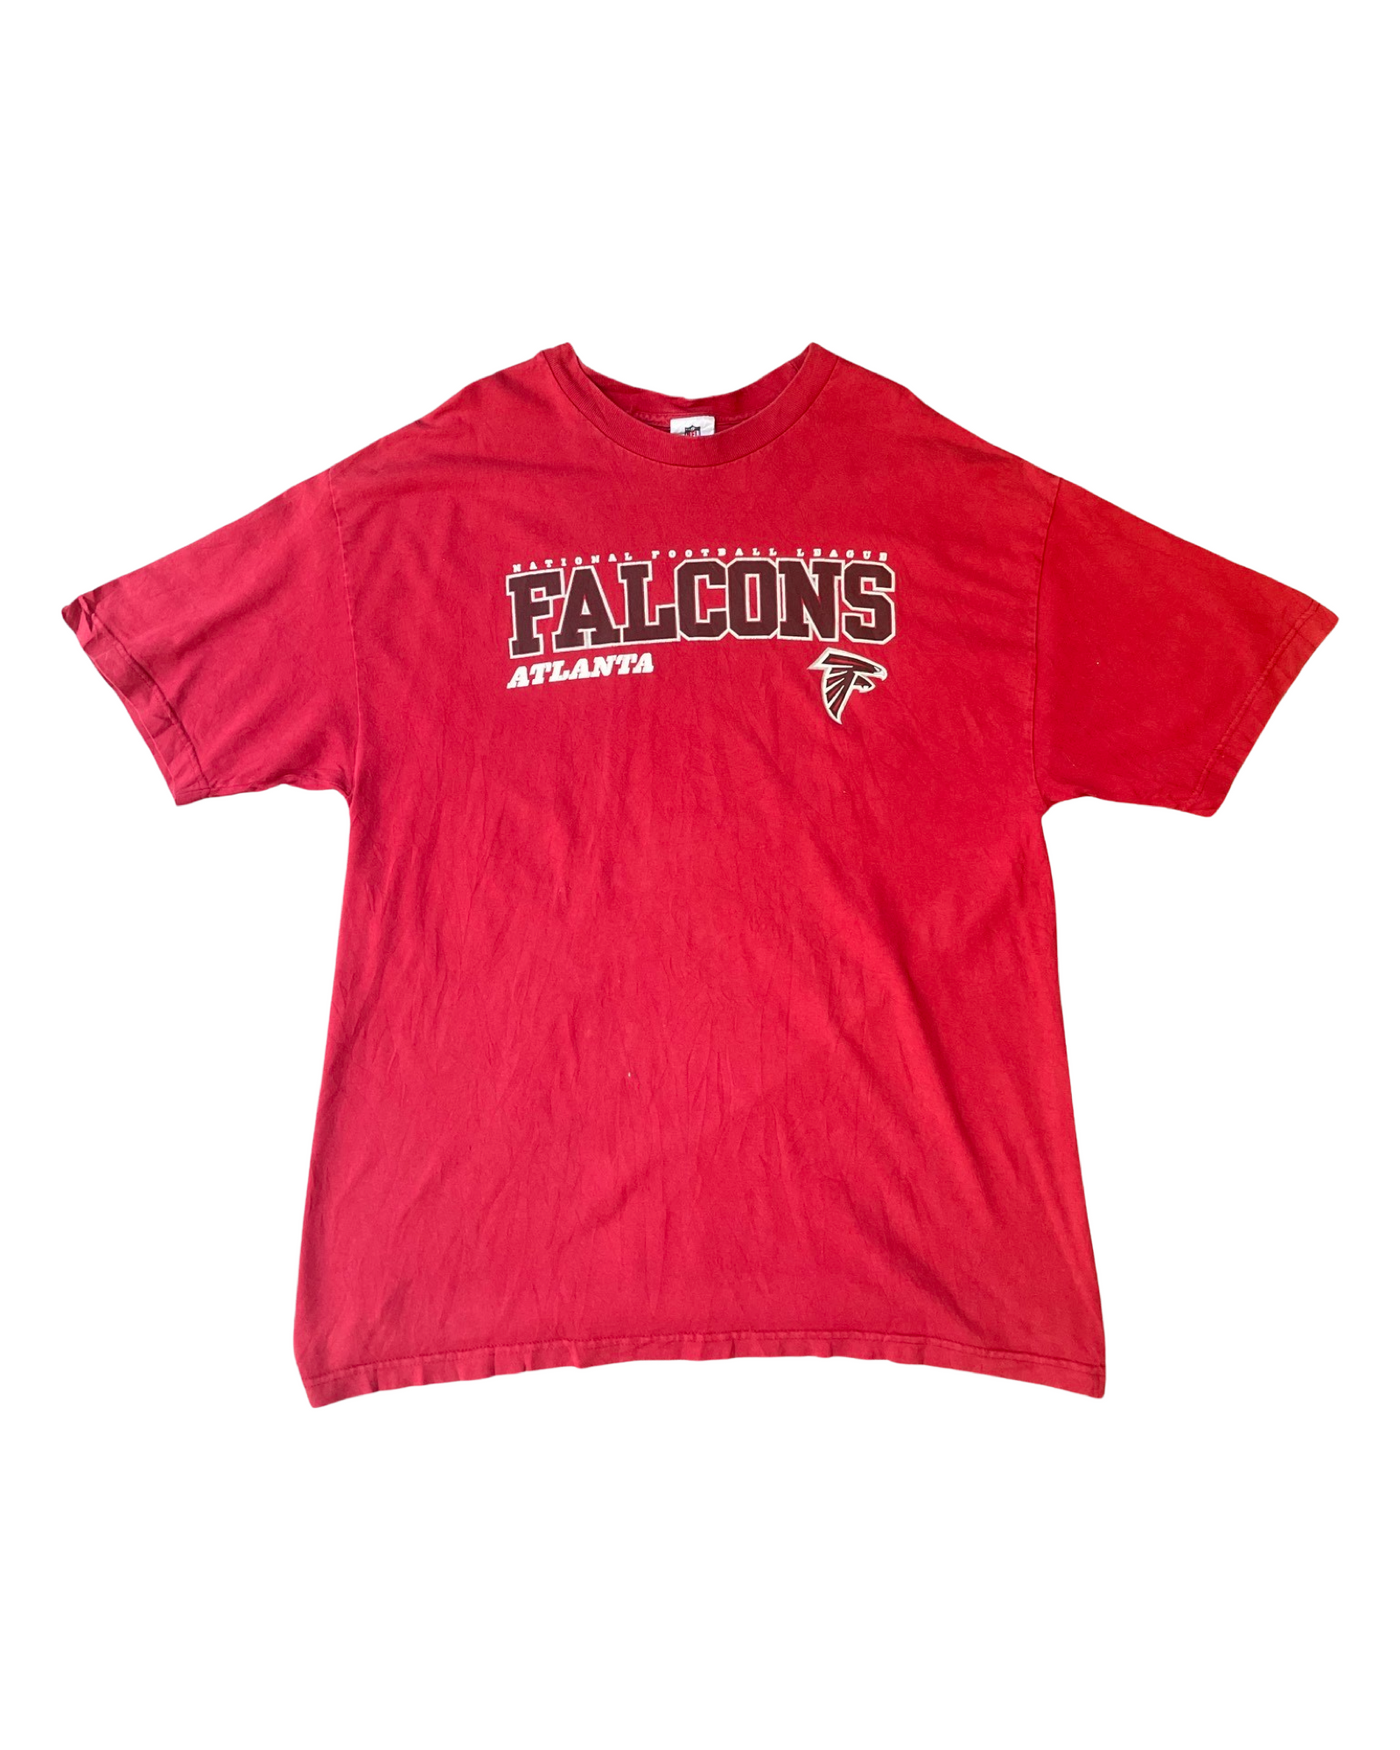 Vintage NFL Atlanta Falcons T-Shirt Size XL